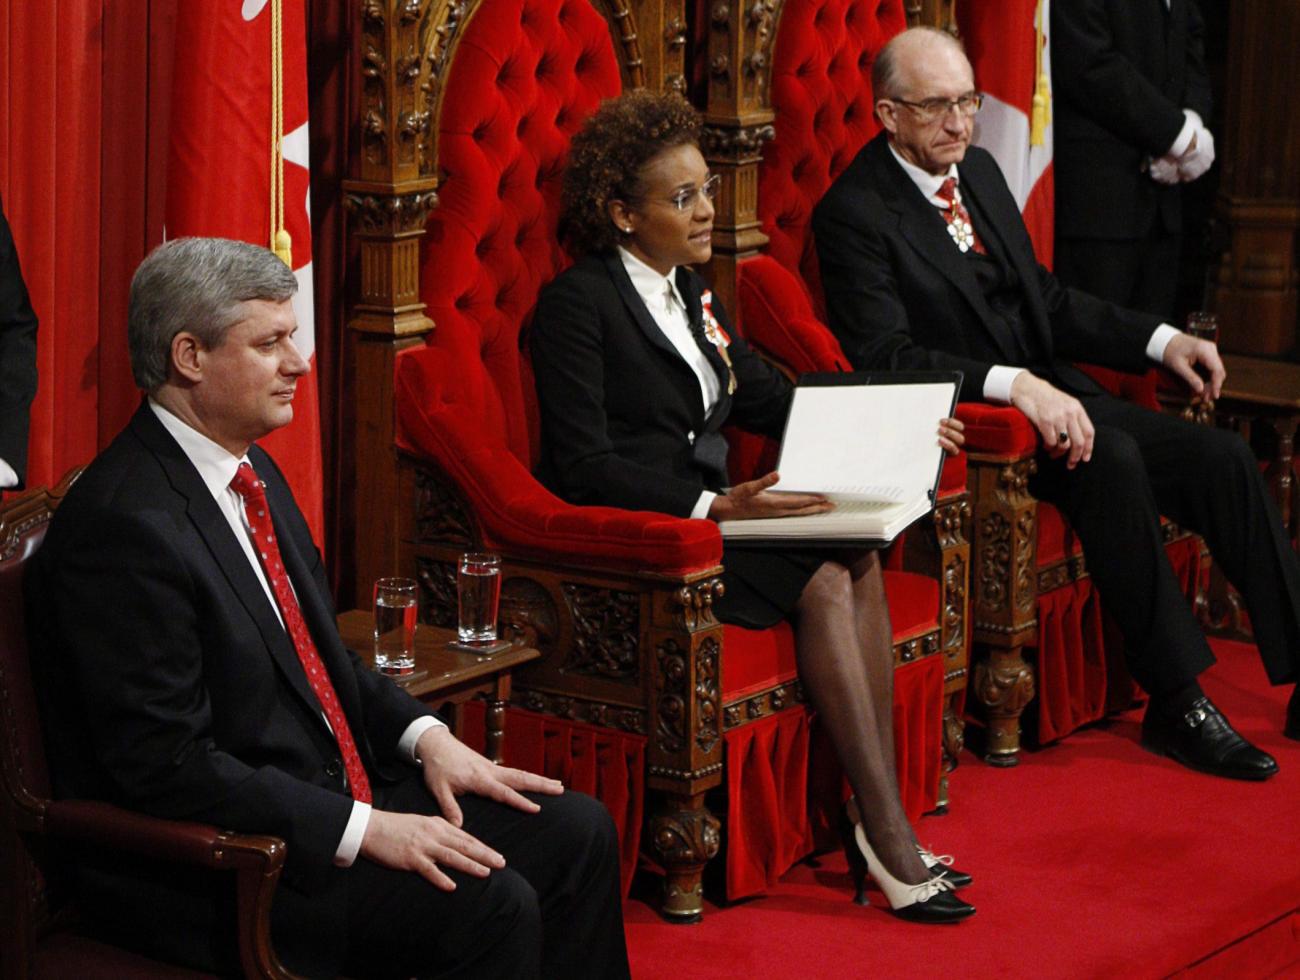 Michaëlle Jean assise sur un trône rouge entre deux hommes, l’un sur un trône rouge, l’autre sur une chaise.